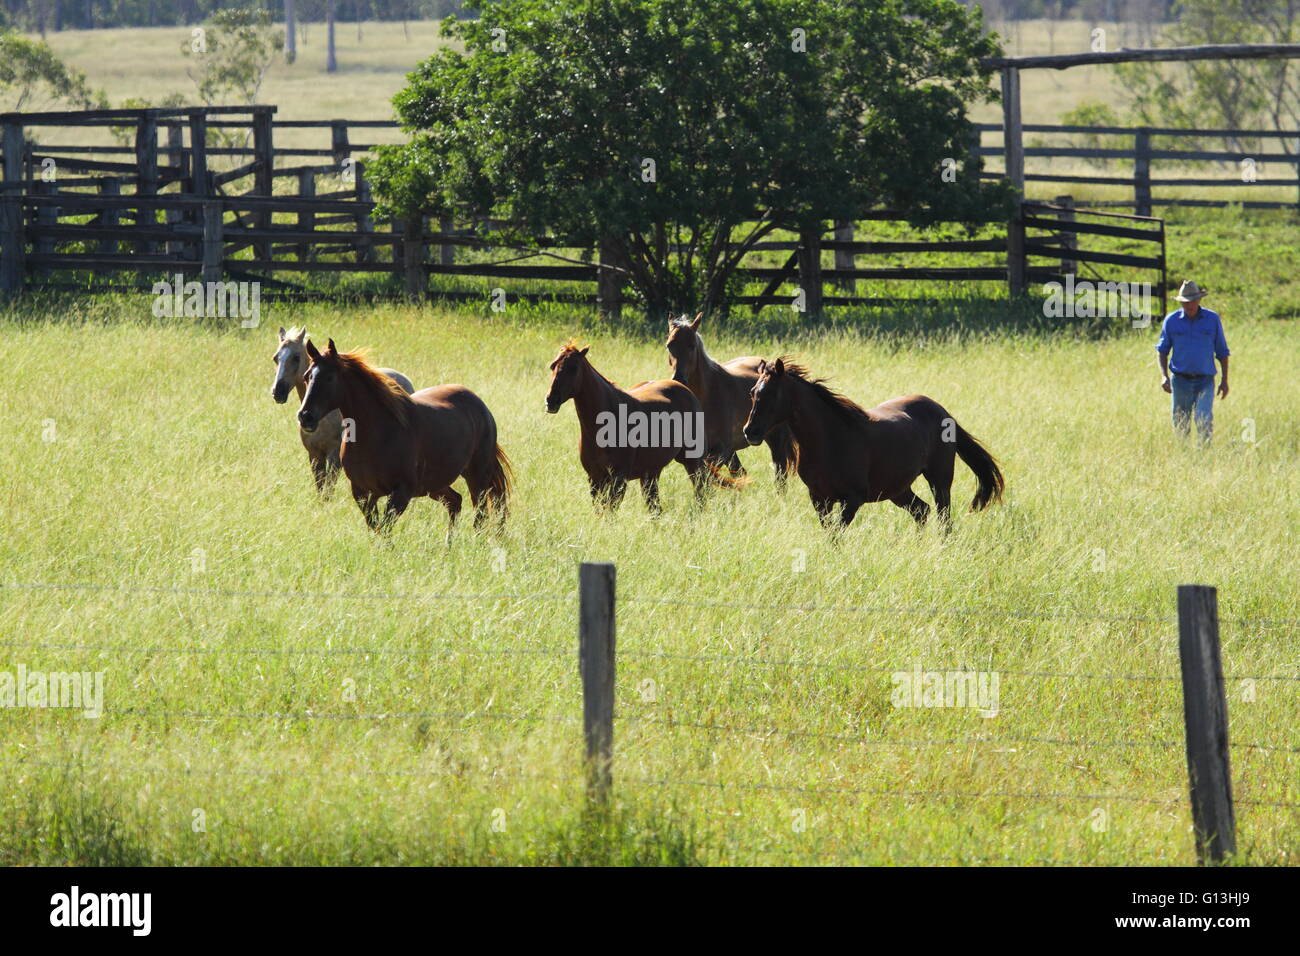 Ein Bauer geht hinter 5 Pferde in einem grasbewachsenen Paddock mit einem Zaun vor und Yards hinter. Stockfoto